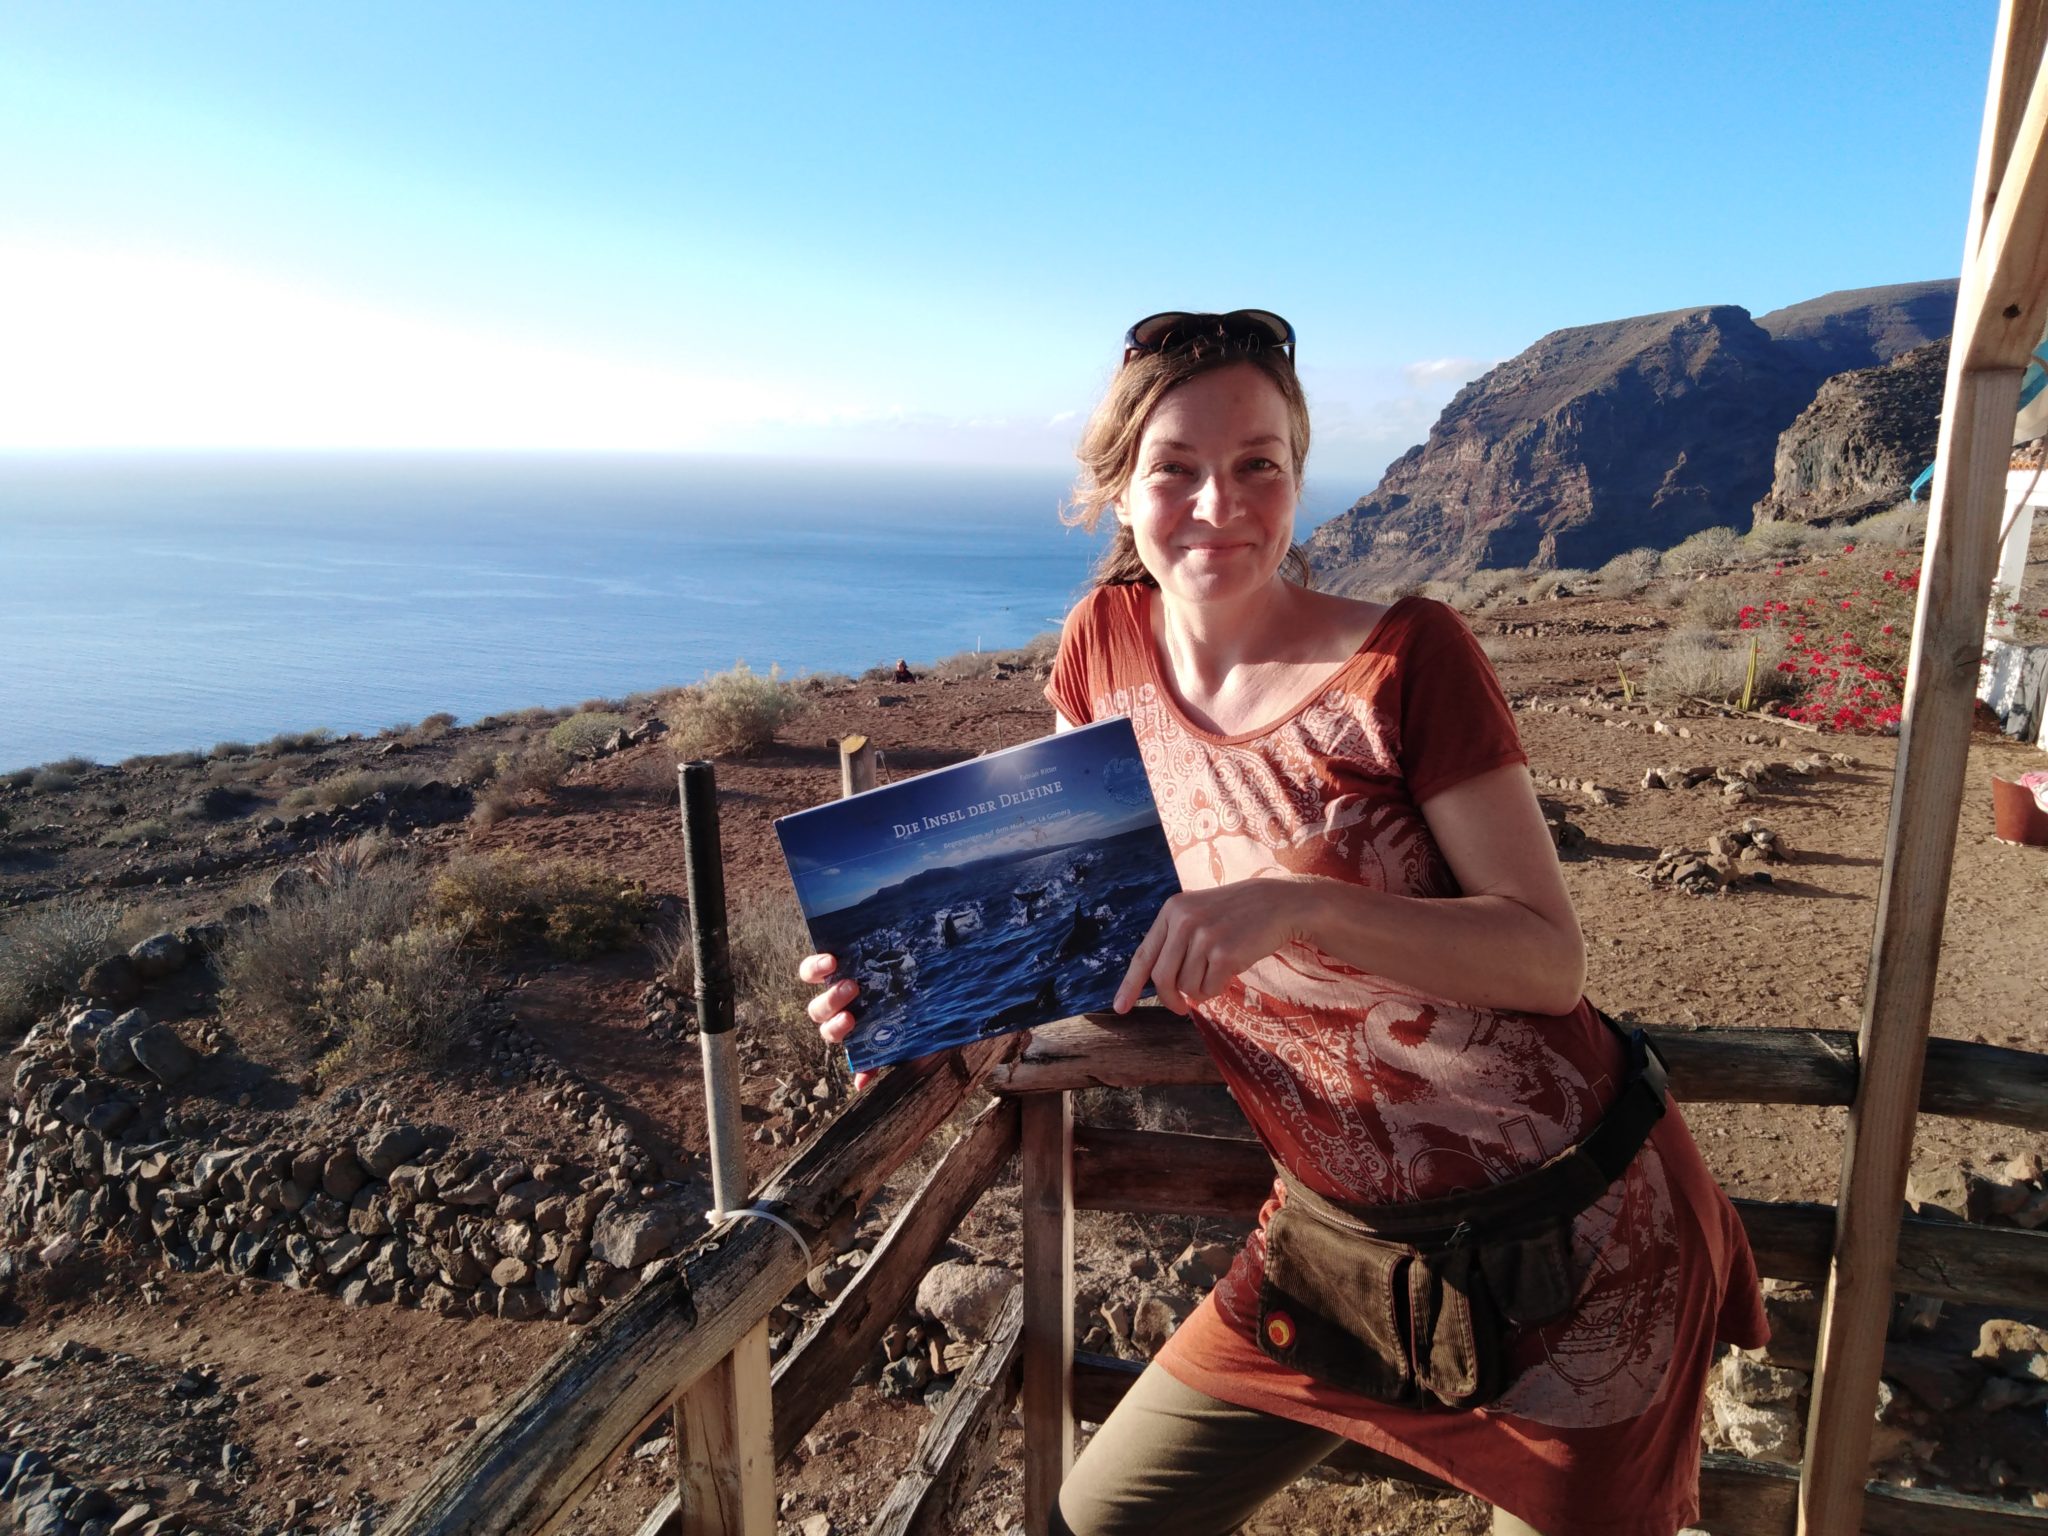 Barbara Focke steht an der Ecke der kleinen Aussichtsplattform. In ihren Händen hält sie das Buch "Die Insel der Delfine". Im Hintergrund sieht man wieder das Meer und die Berge von La Gomera